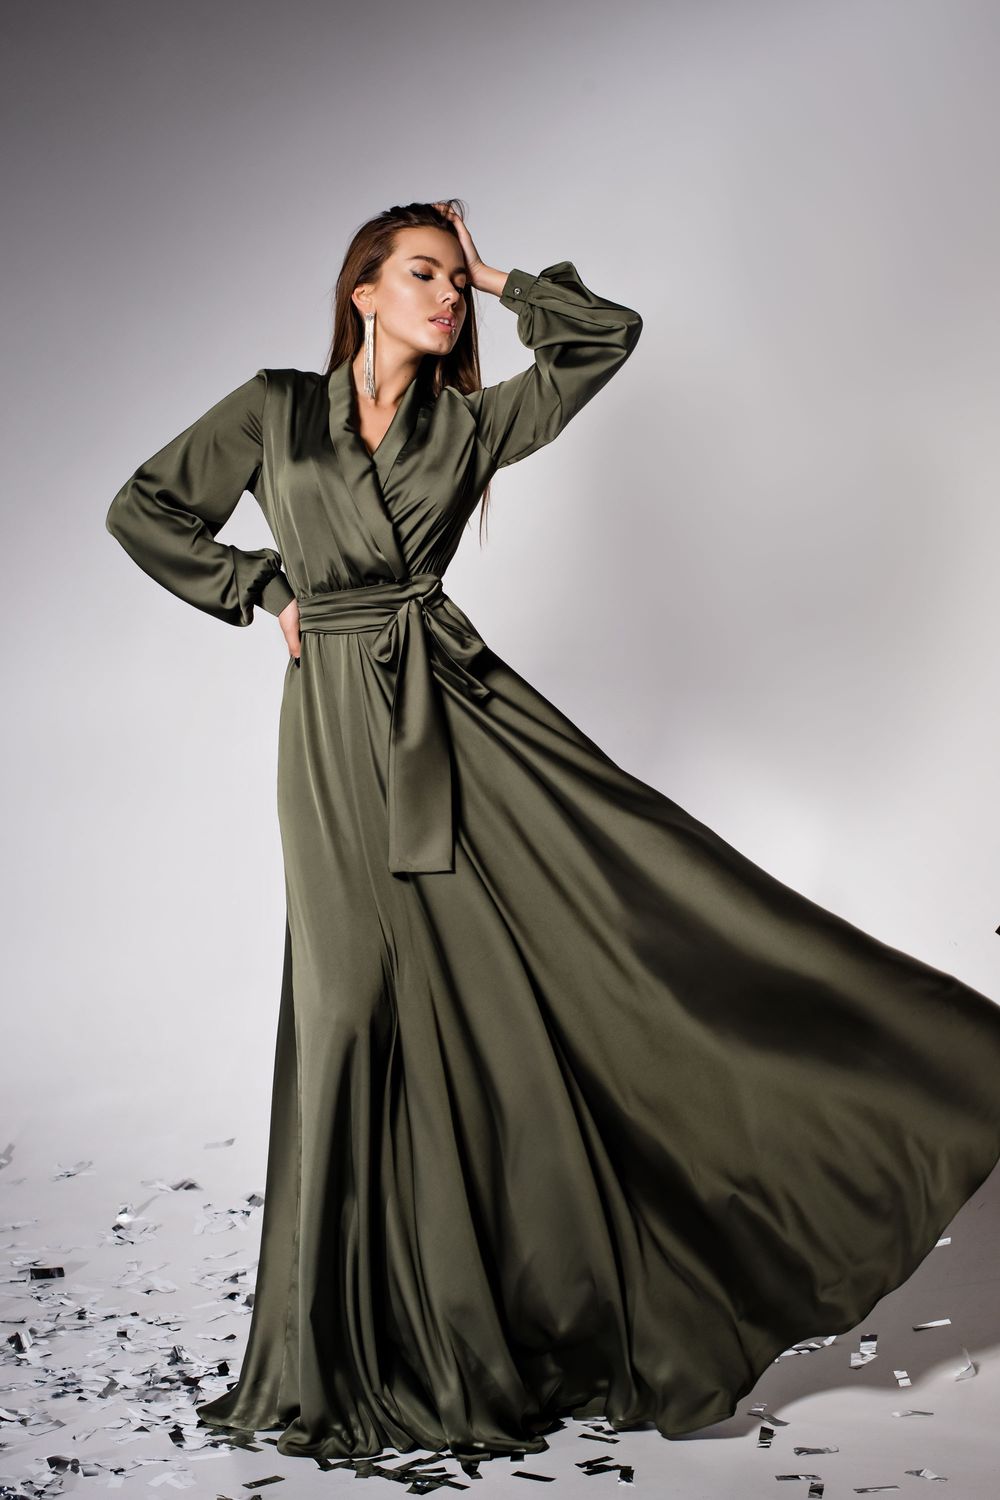 Елегантне вечірнє плаття в пол з шовку кольору хакі - фото